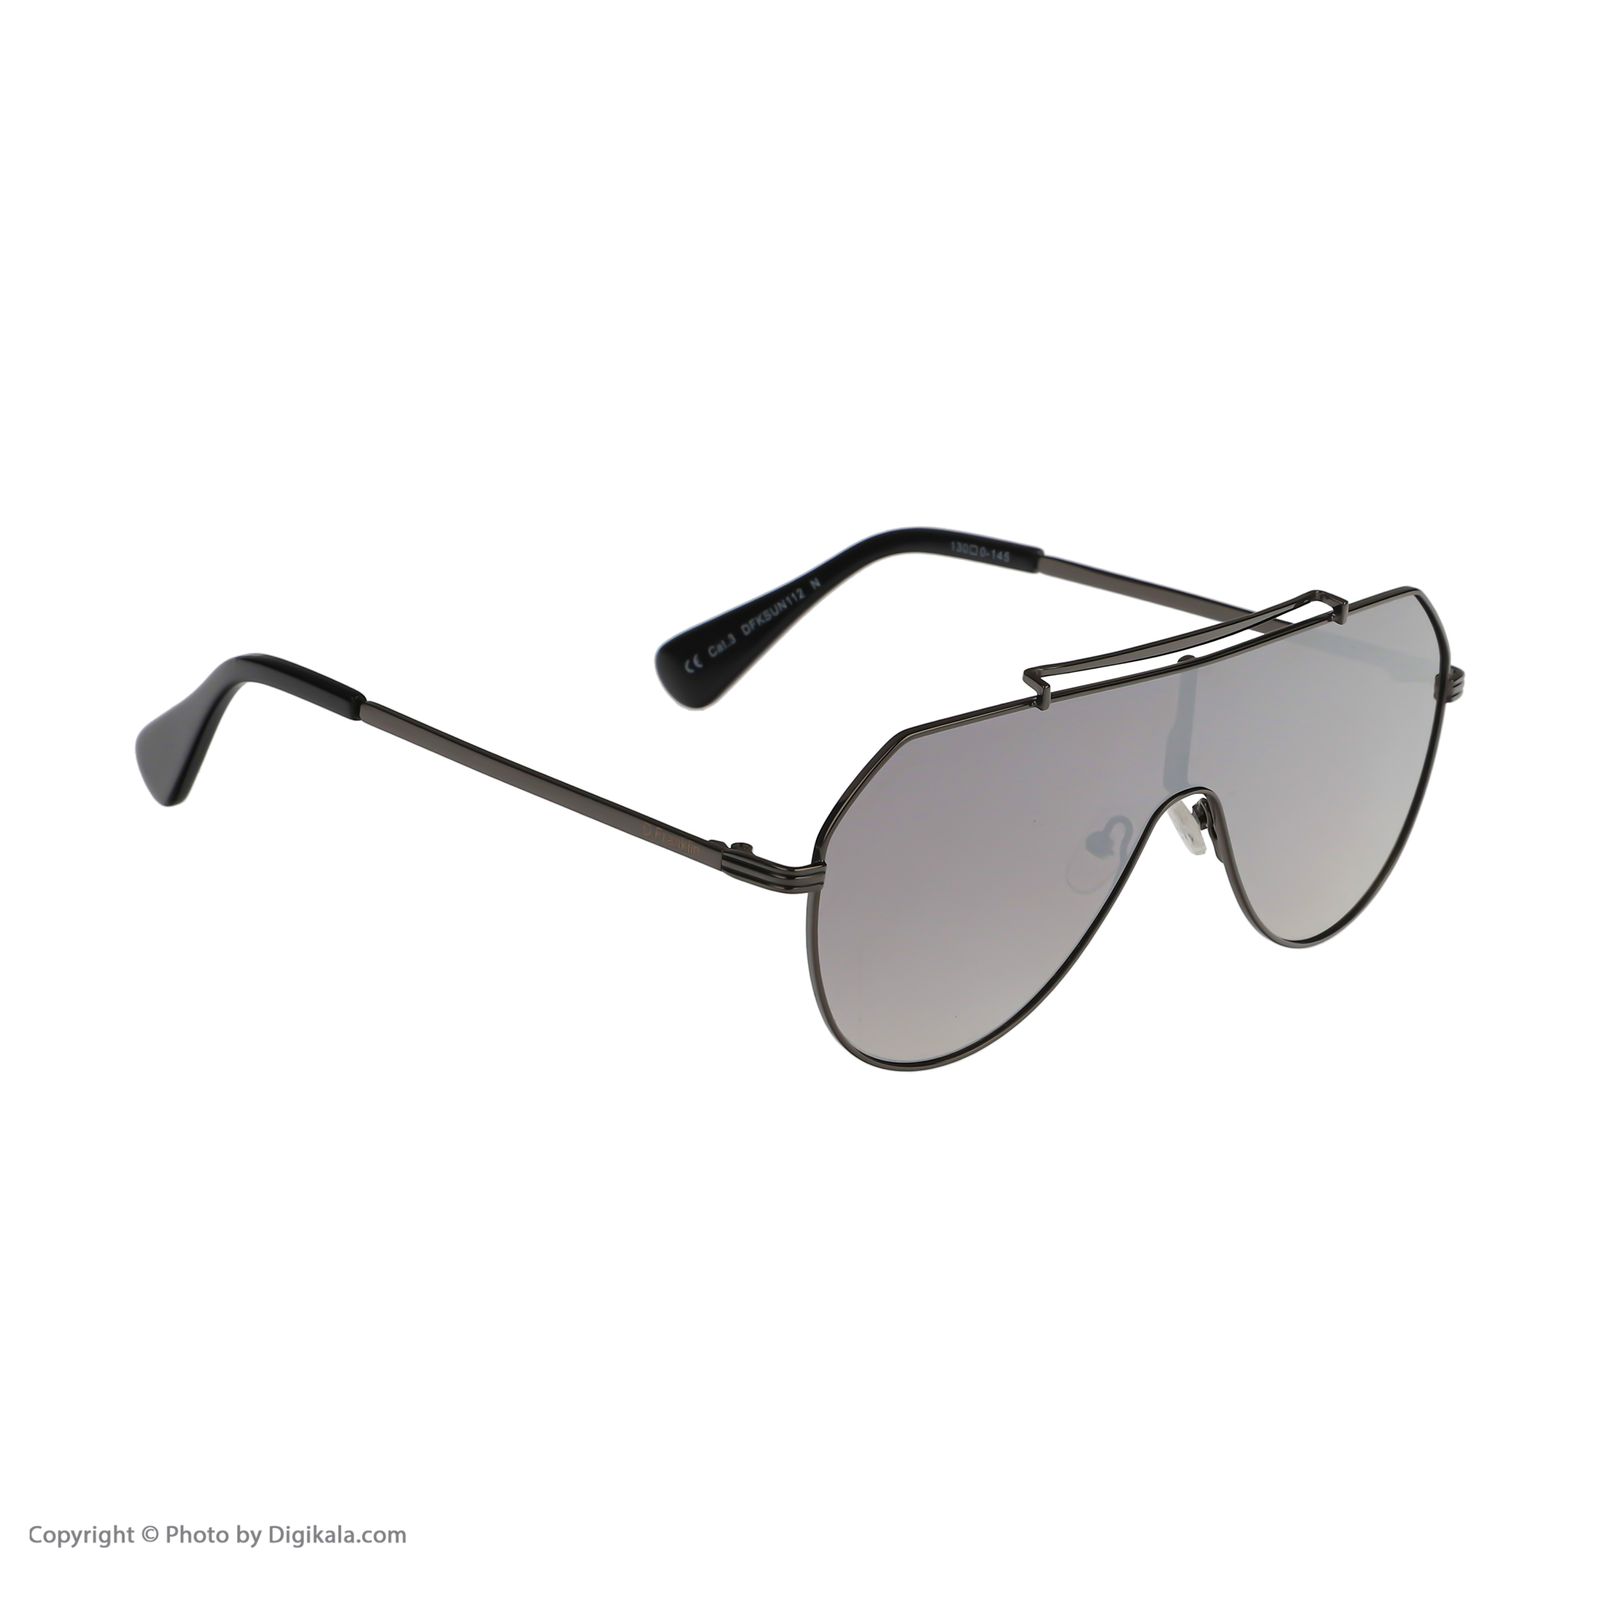 عینک آفتابی دیفرنکلین مدل 816 raptor av gunmetal silver -  - 3